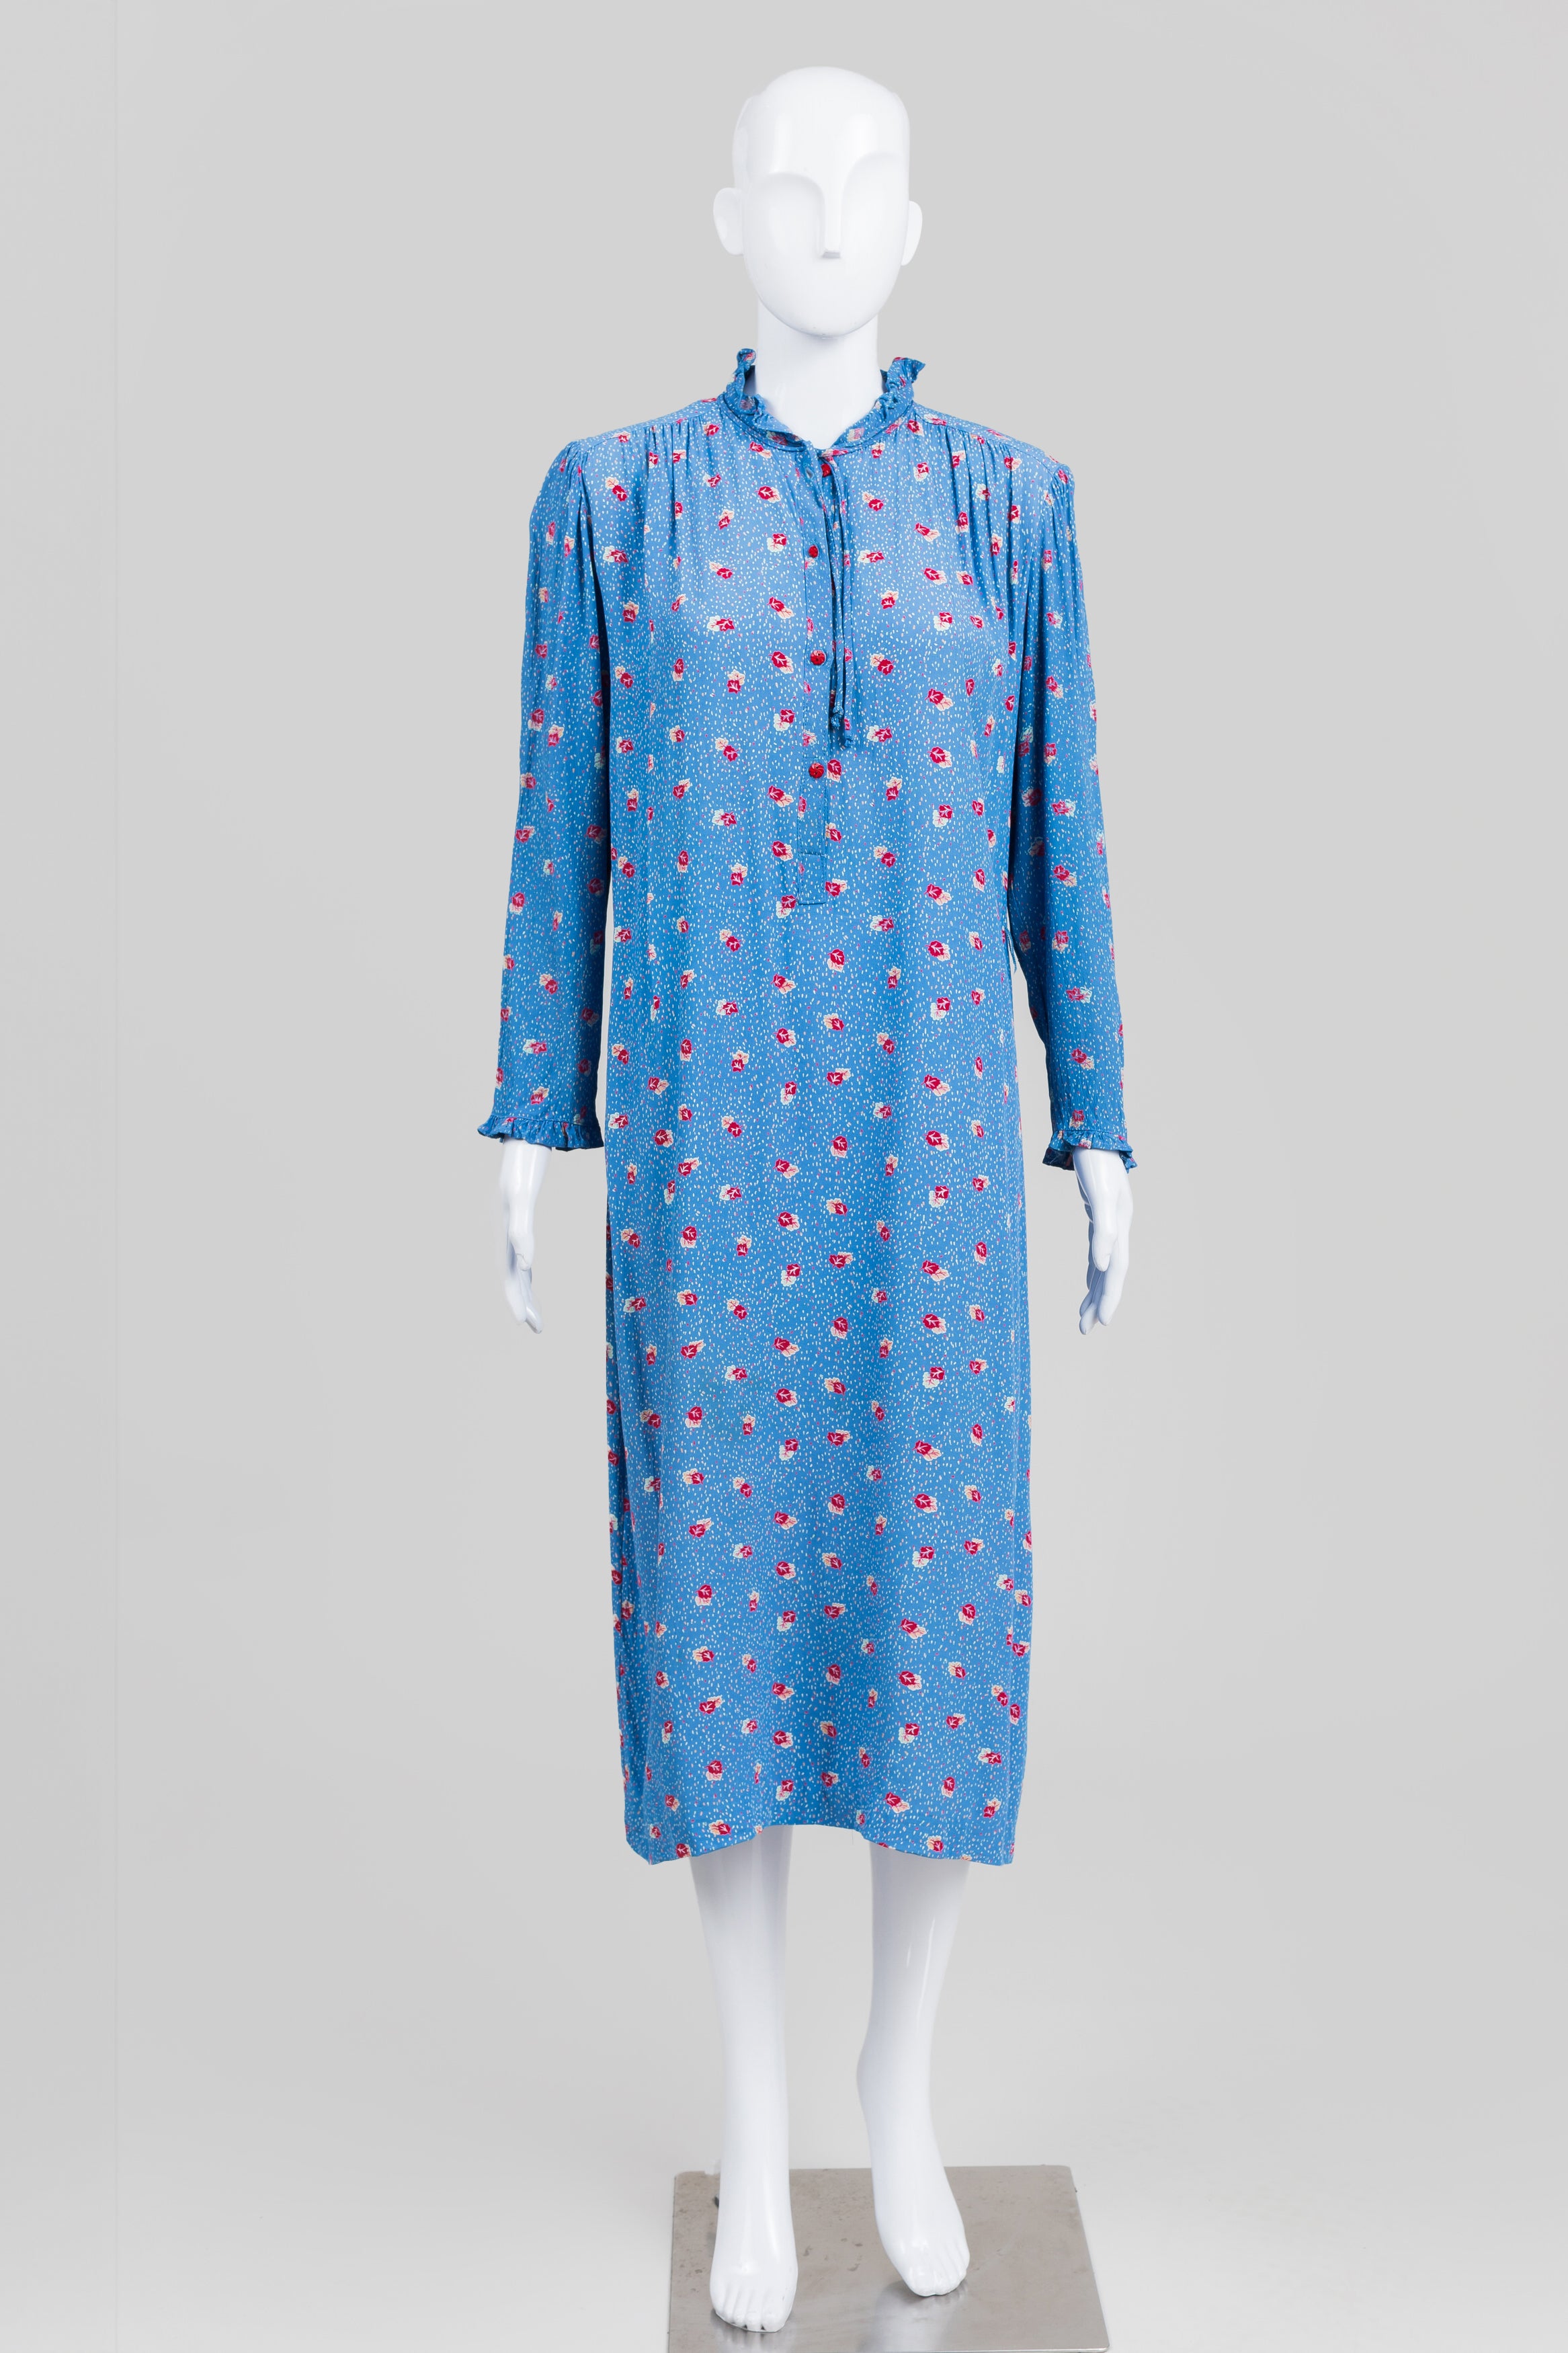 Belle France Vintage Blue/Red Leaf Print Dress (12)